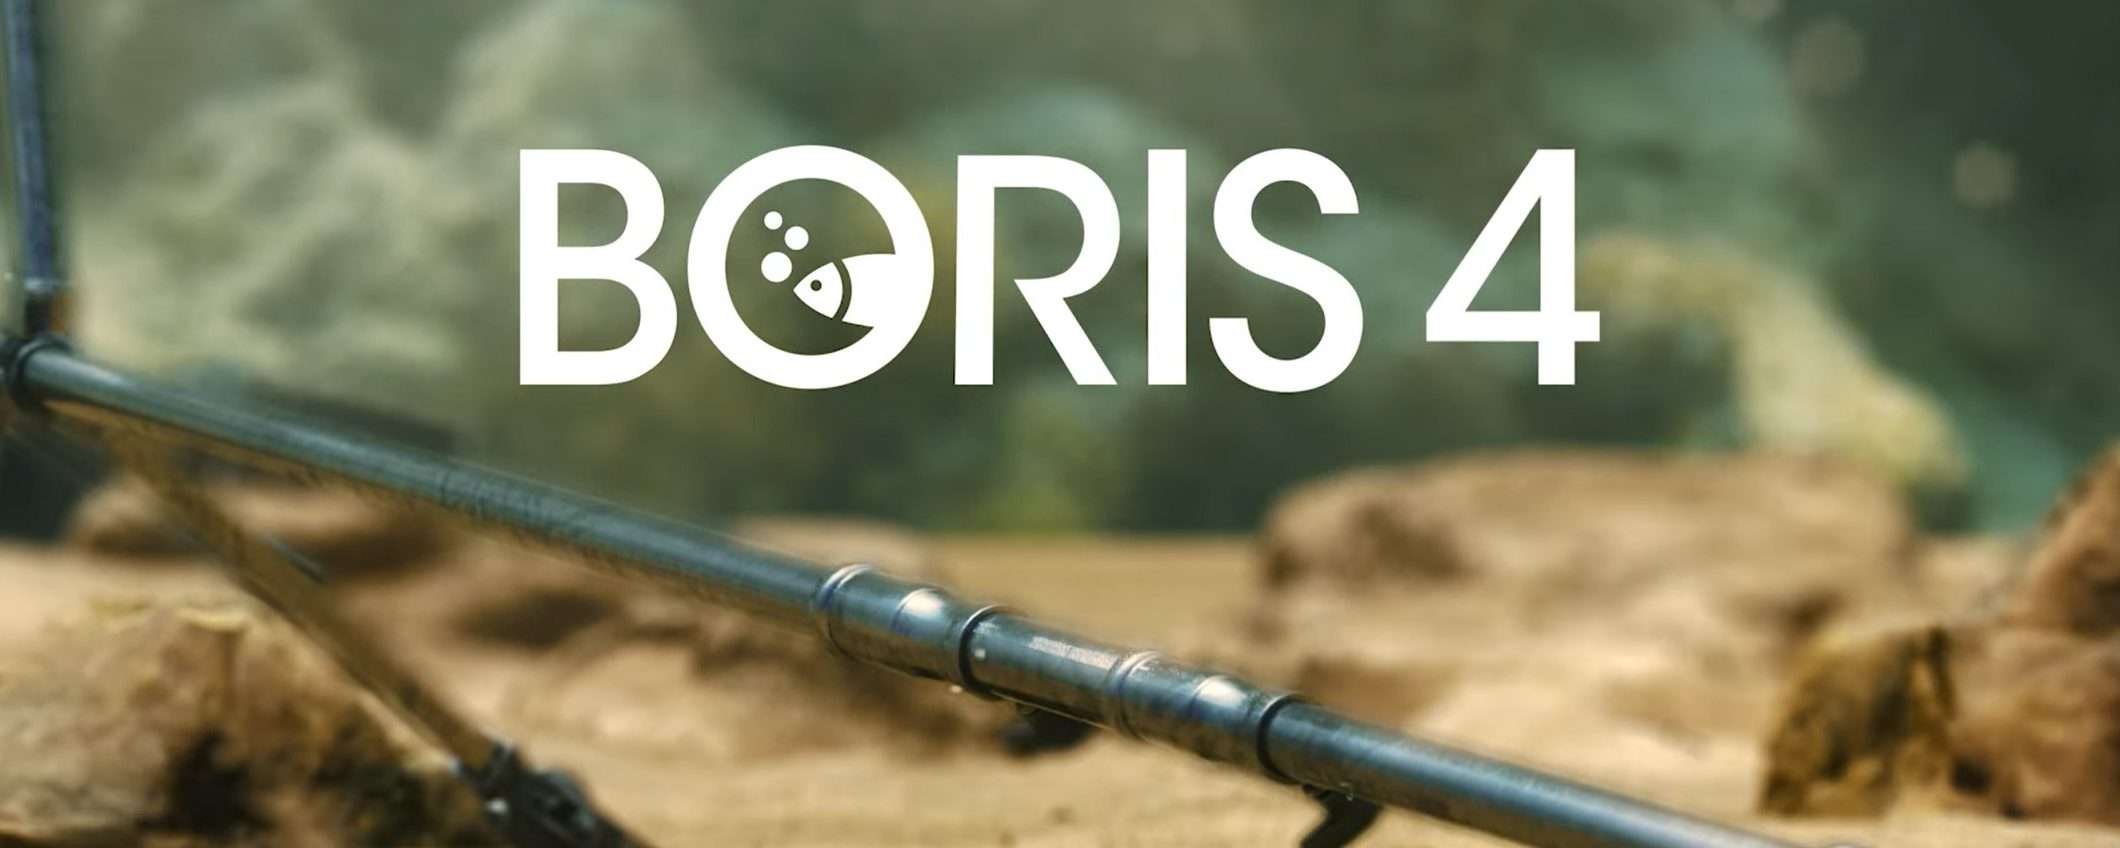 Boris 4: la maratona prima della nuova stagione